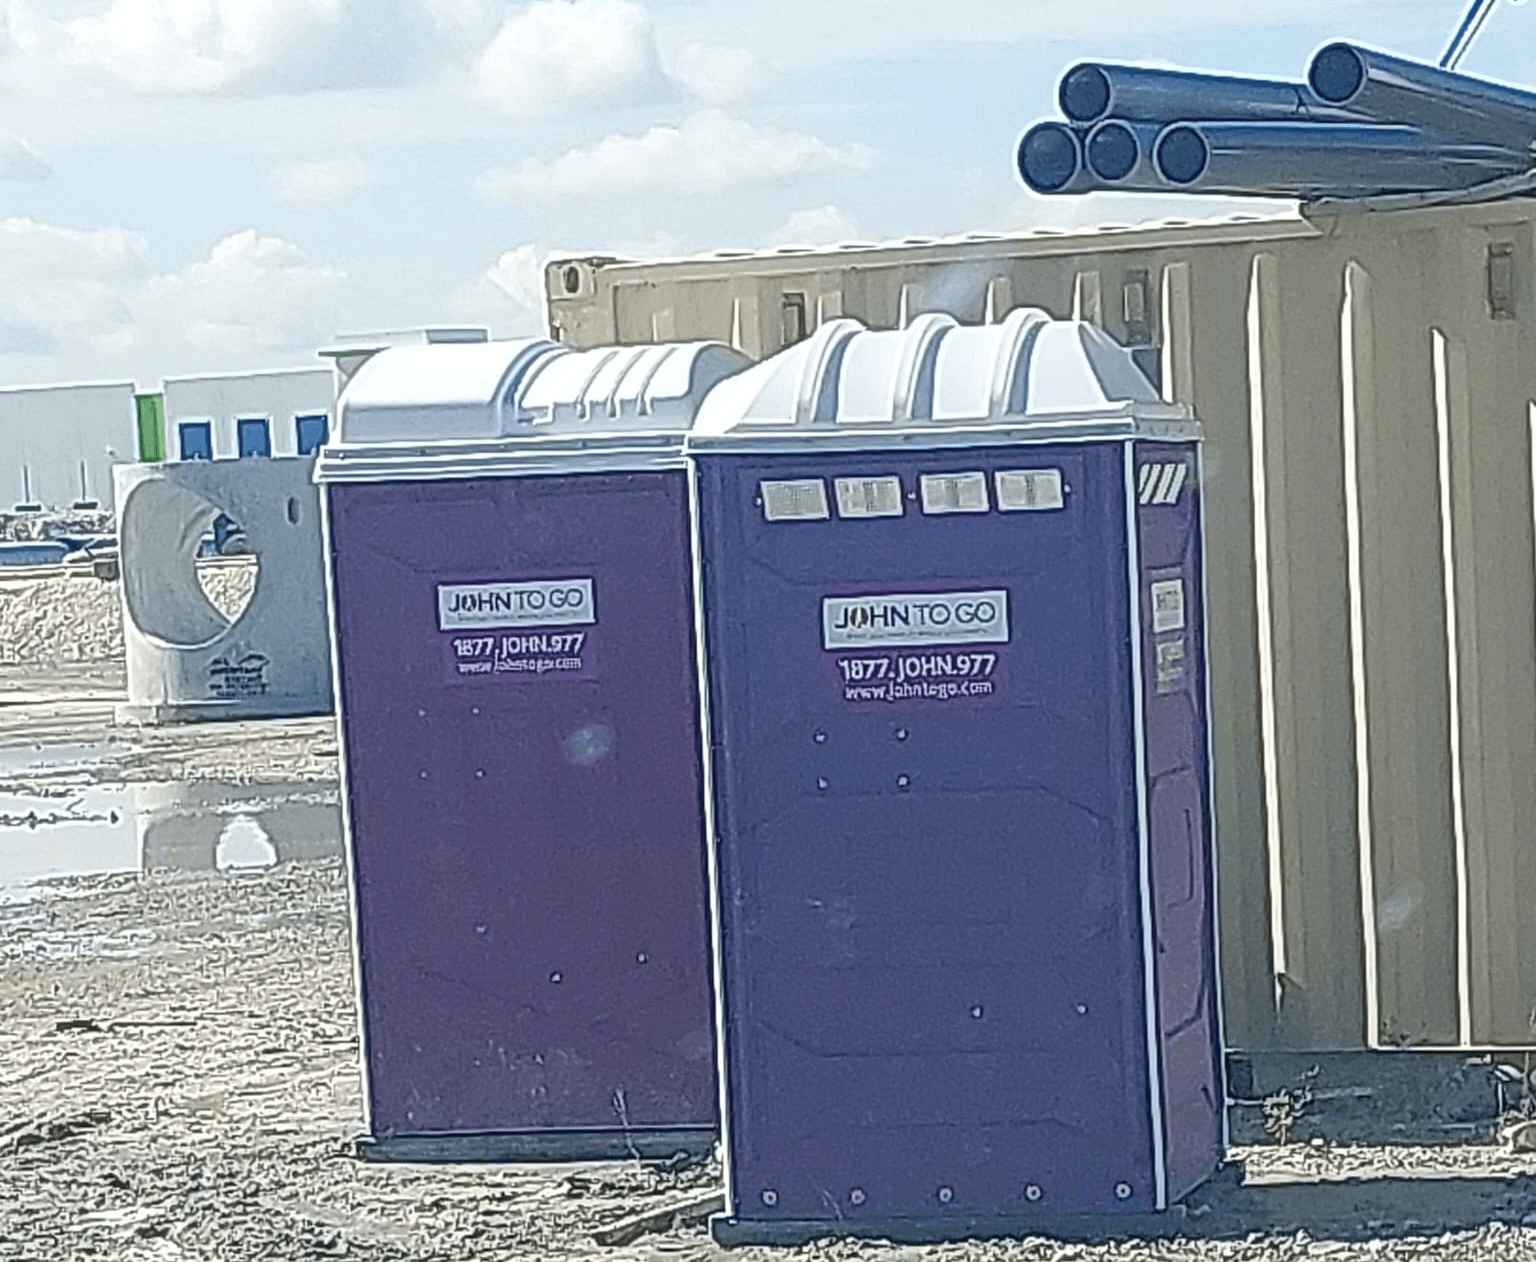 Porta potty rental in Garden City for outdoor activities